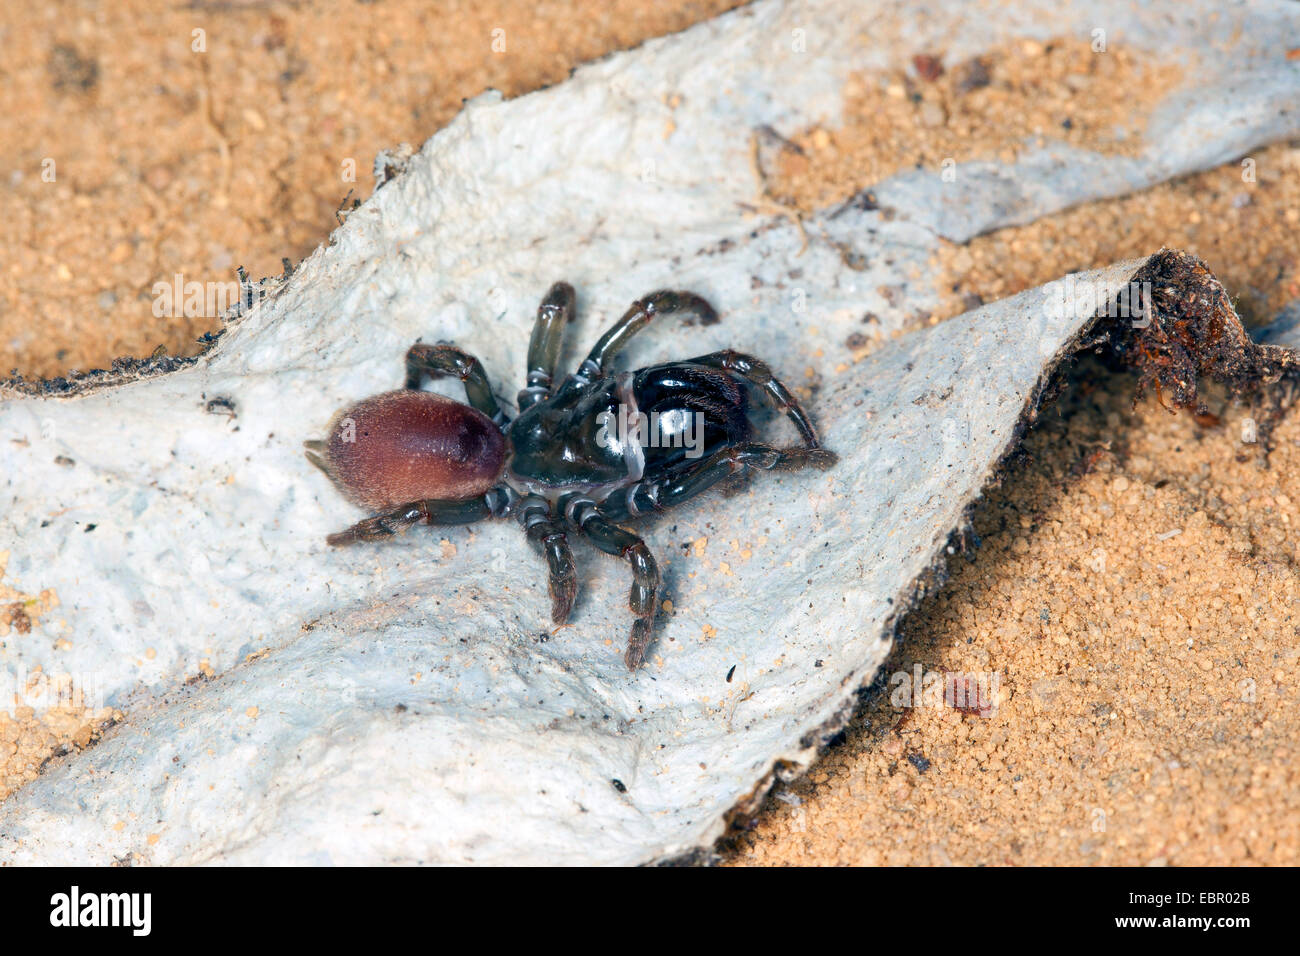 Sac à main-Spider web (Atypus affinis), sur son site web, Allemagne Banque D'Images